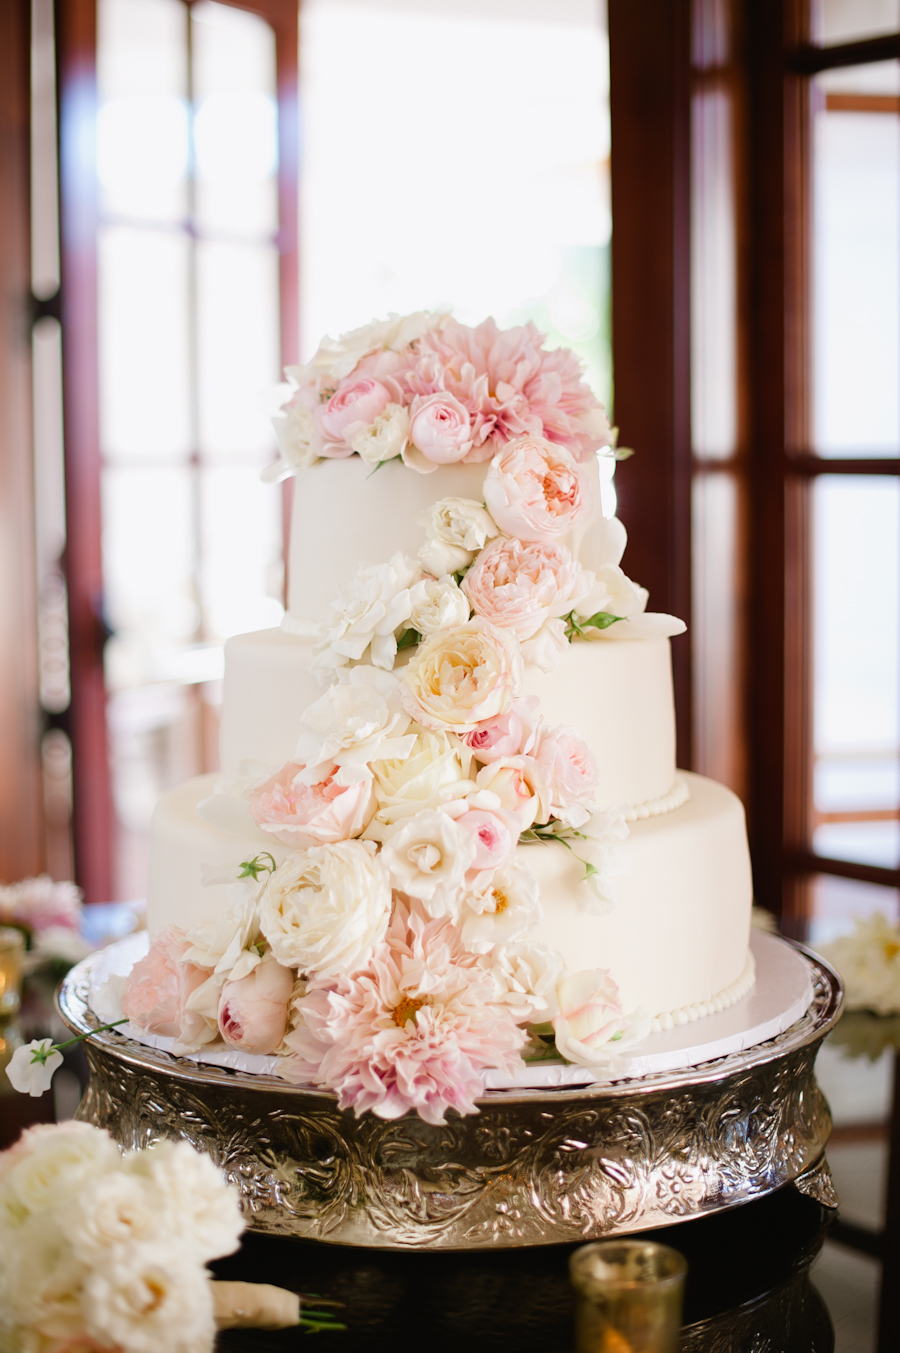 Wedding Cake with Fresh Flowers - Elizabeth Anne Designs: The Wedding Blog